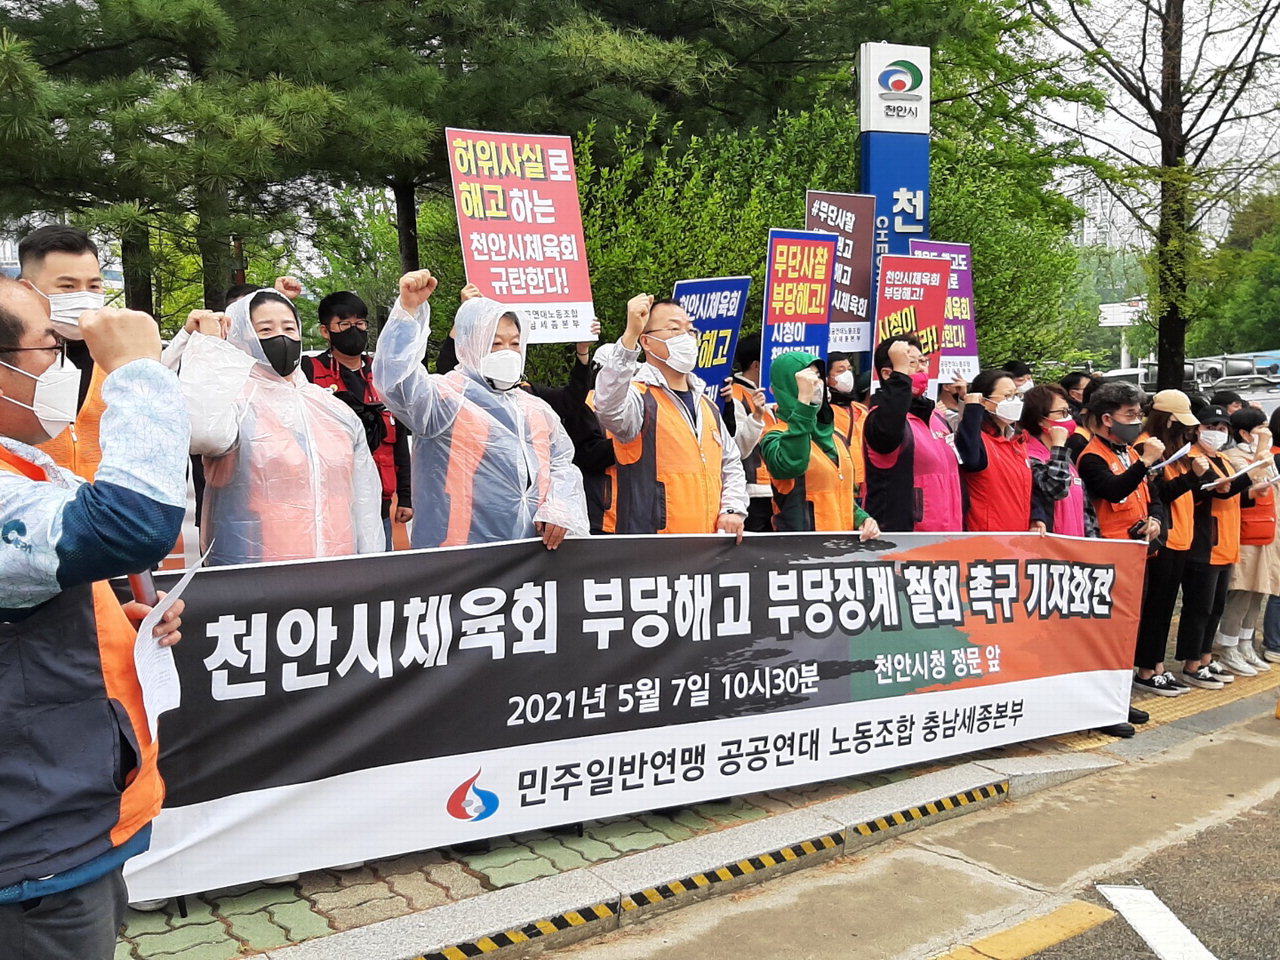 지난 5월 7일 천안시체육회 부당해고 등 중징계를 규탄하는 집회가 열리고 있는 모습. /중부매일DB